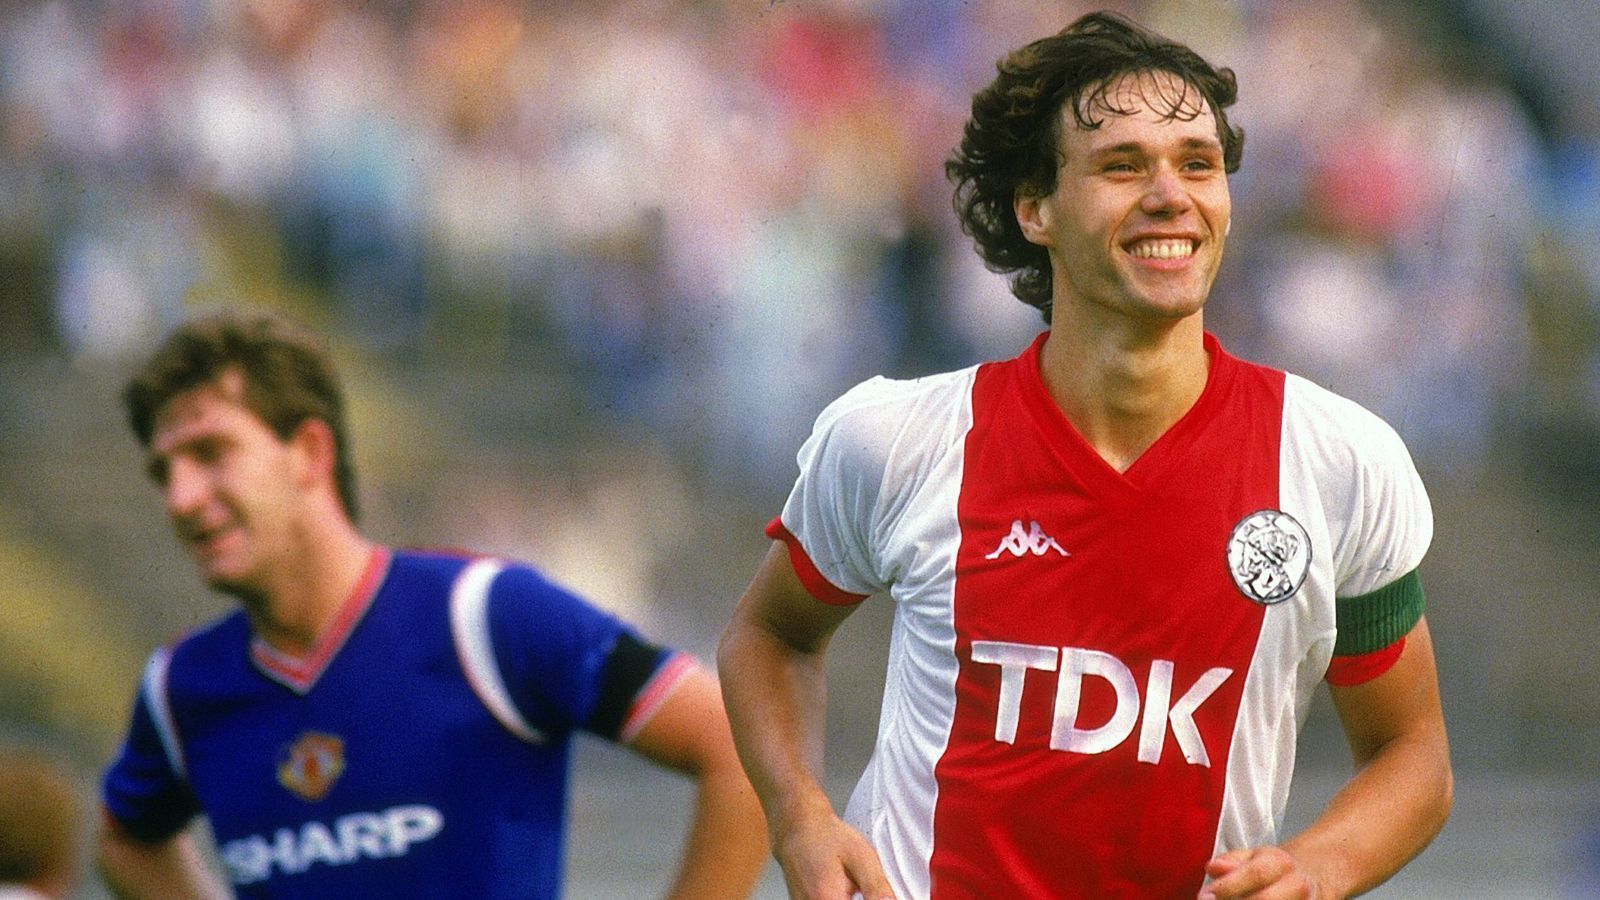 
                <strong>Eredivisie (Niederlande)</strong><br>
                Marco van Basten erzielte in der Saison 1985/86 37 Saisontore in Eredivisie für Ajax Amsterdam. - Auf Platz 2 liegen Luis Suarez (Ajax Amsterdam) und Mateja Kezman (PSV Eindhoven) mit je 35 Saisontoren in der Eredivisie 1 in der Spielzeit 2009/10 bzw. 2002/03.
              